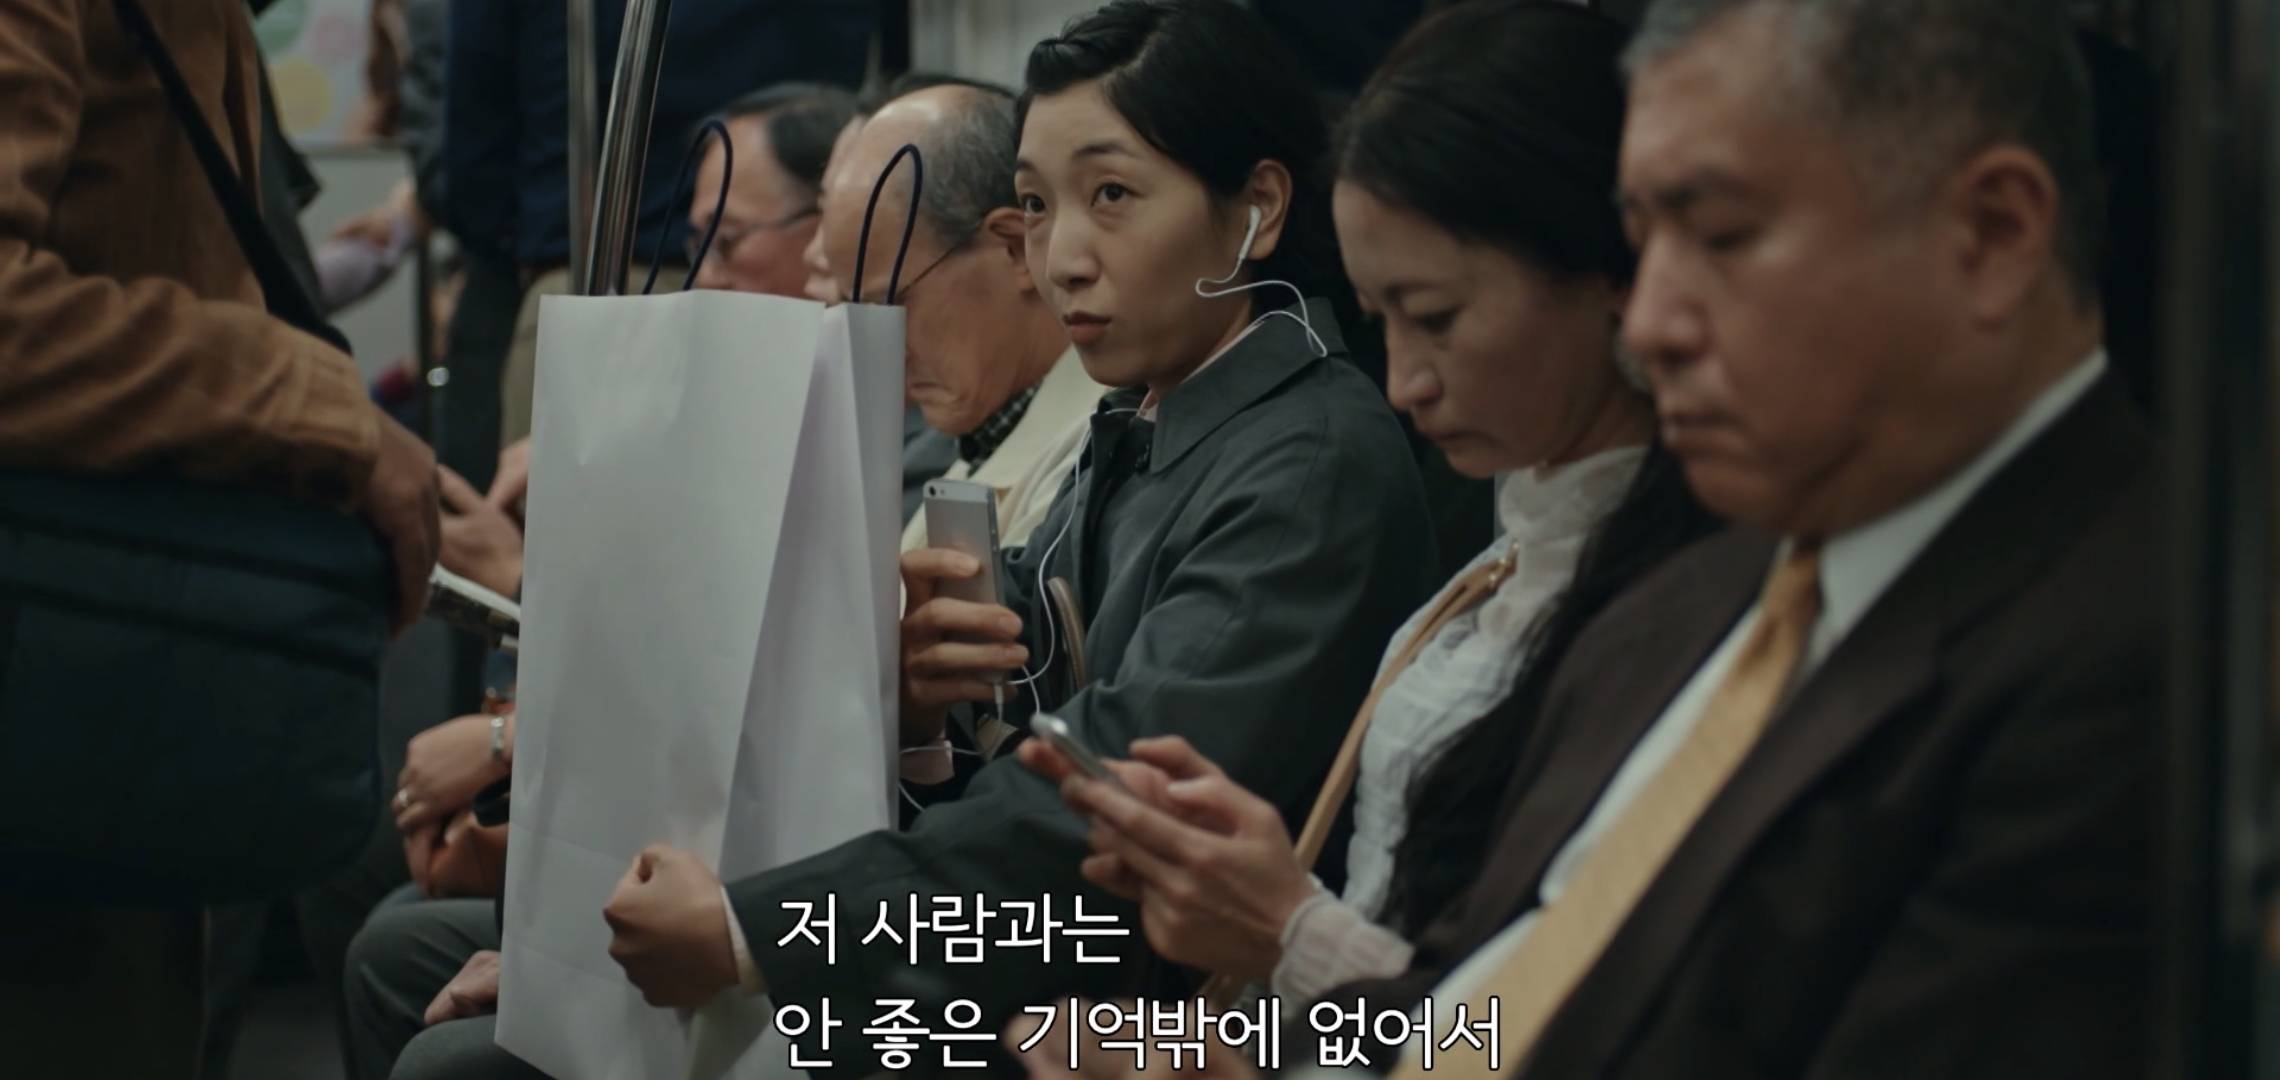 한국에서 제발 리메이크해줬으면 하는 짱잼 일본드라마 내용.jpg | 인스티즈